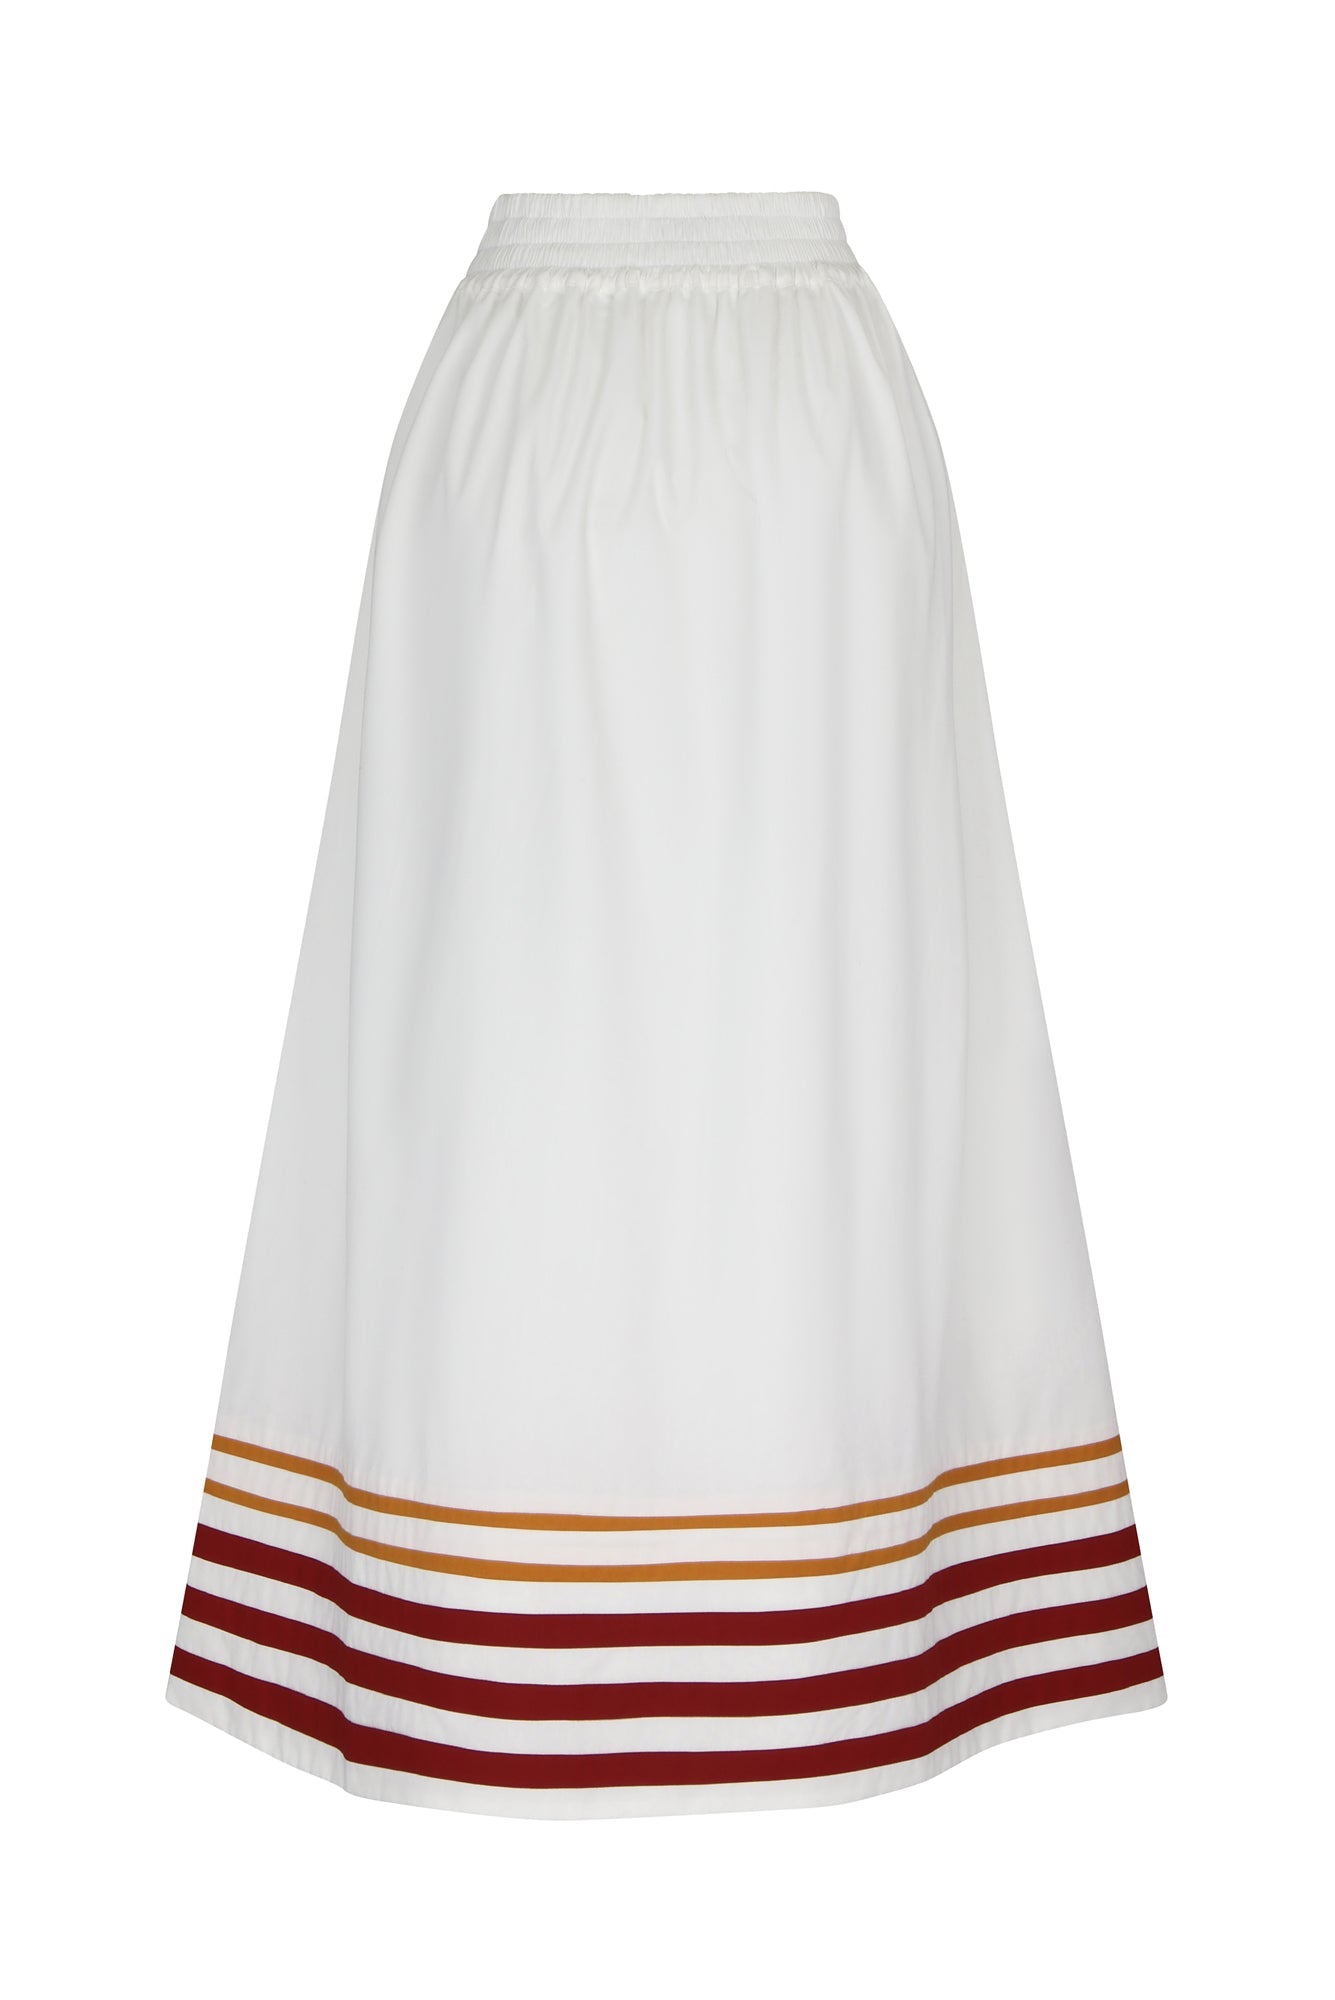 Encantada Skirt in White / Tangerine